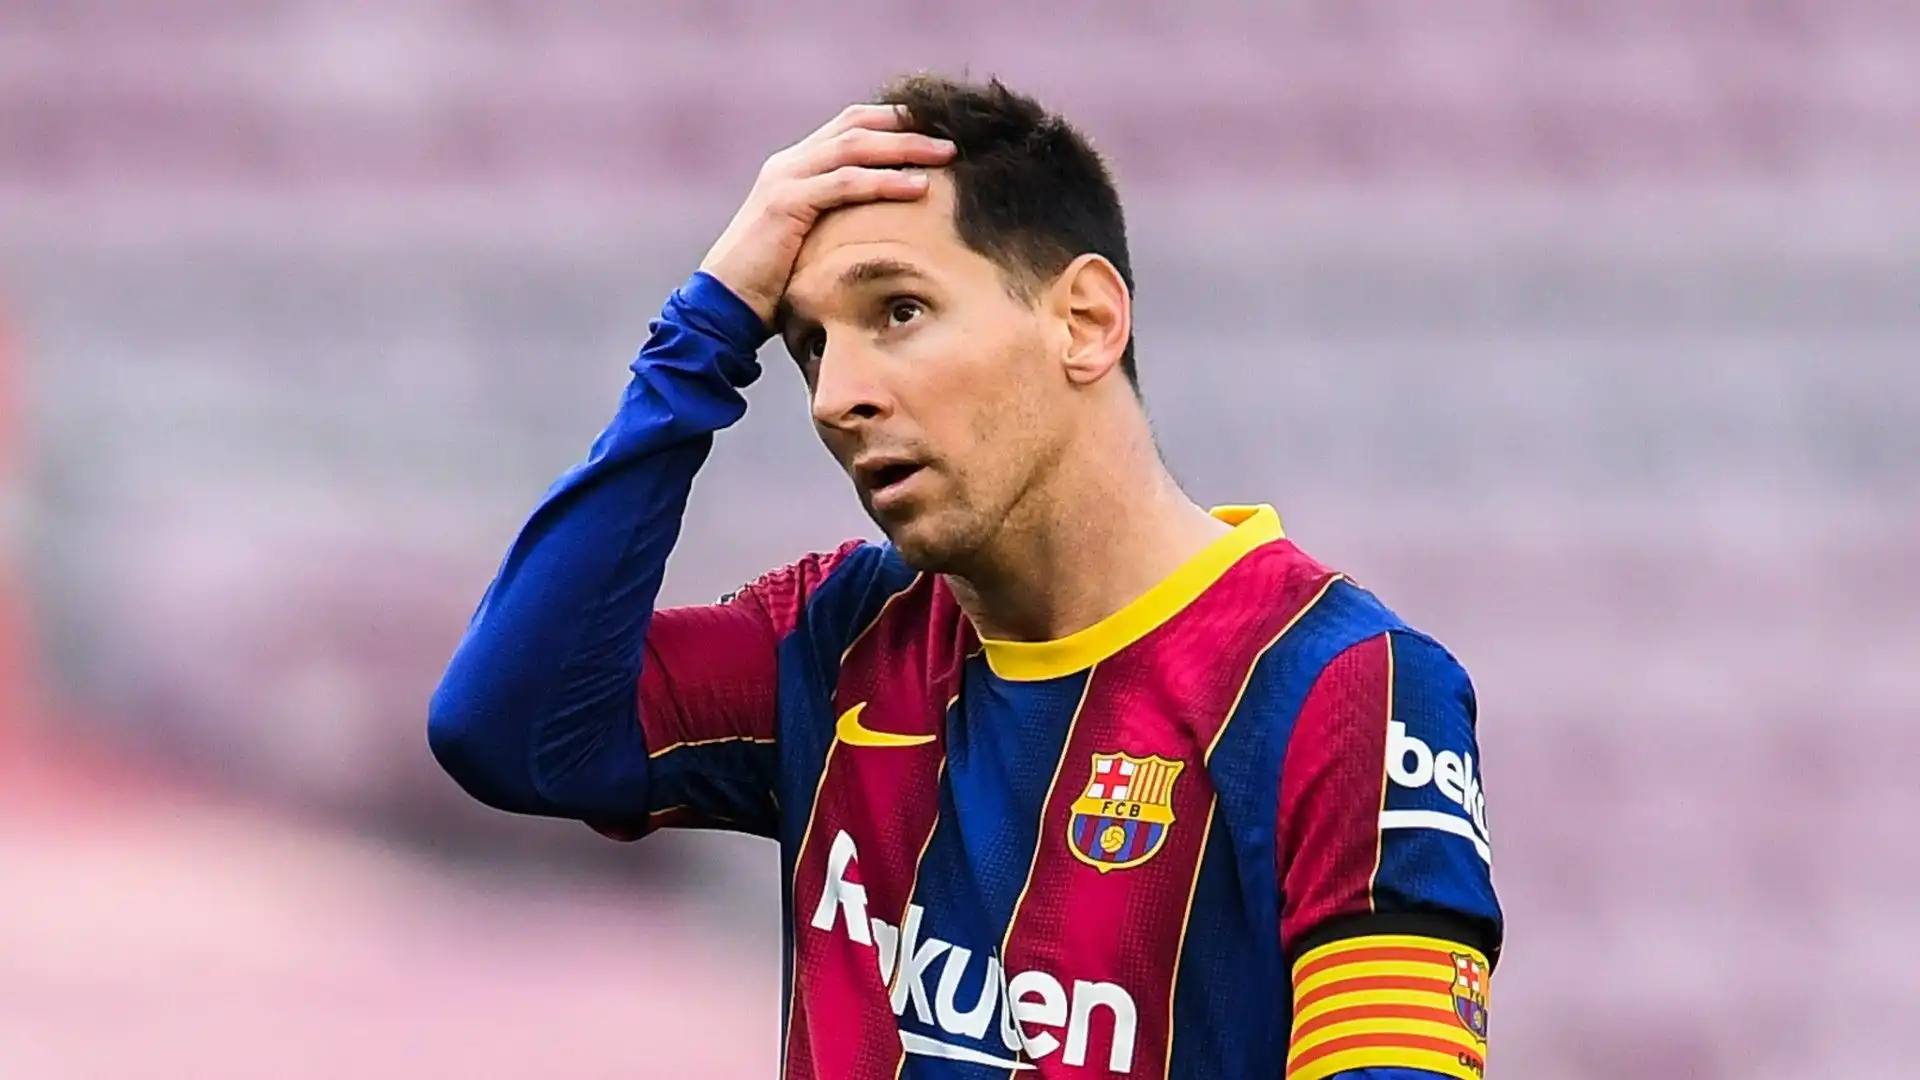 La leggenda del Barcellona: "Se fossi in Messi non tornerei"